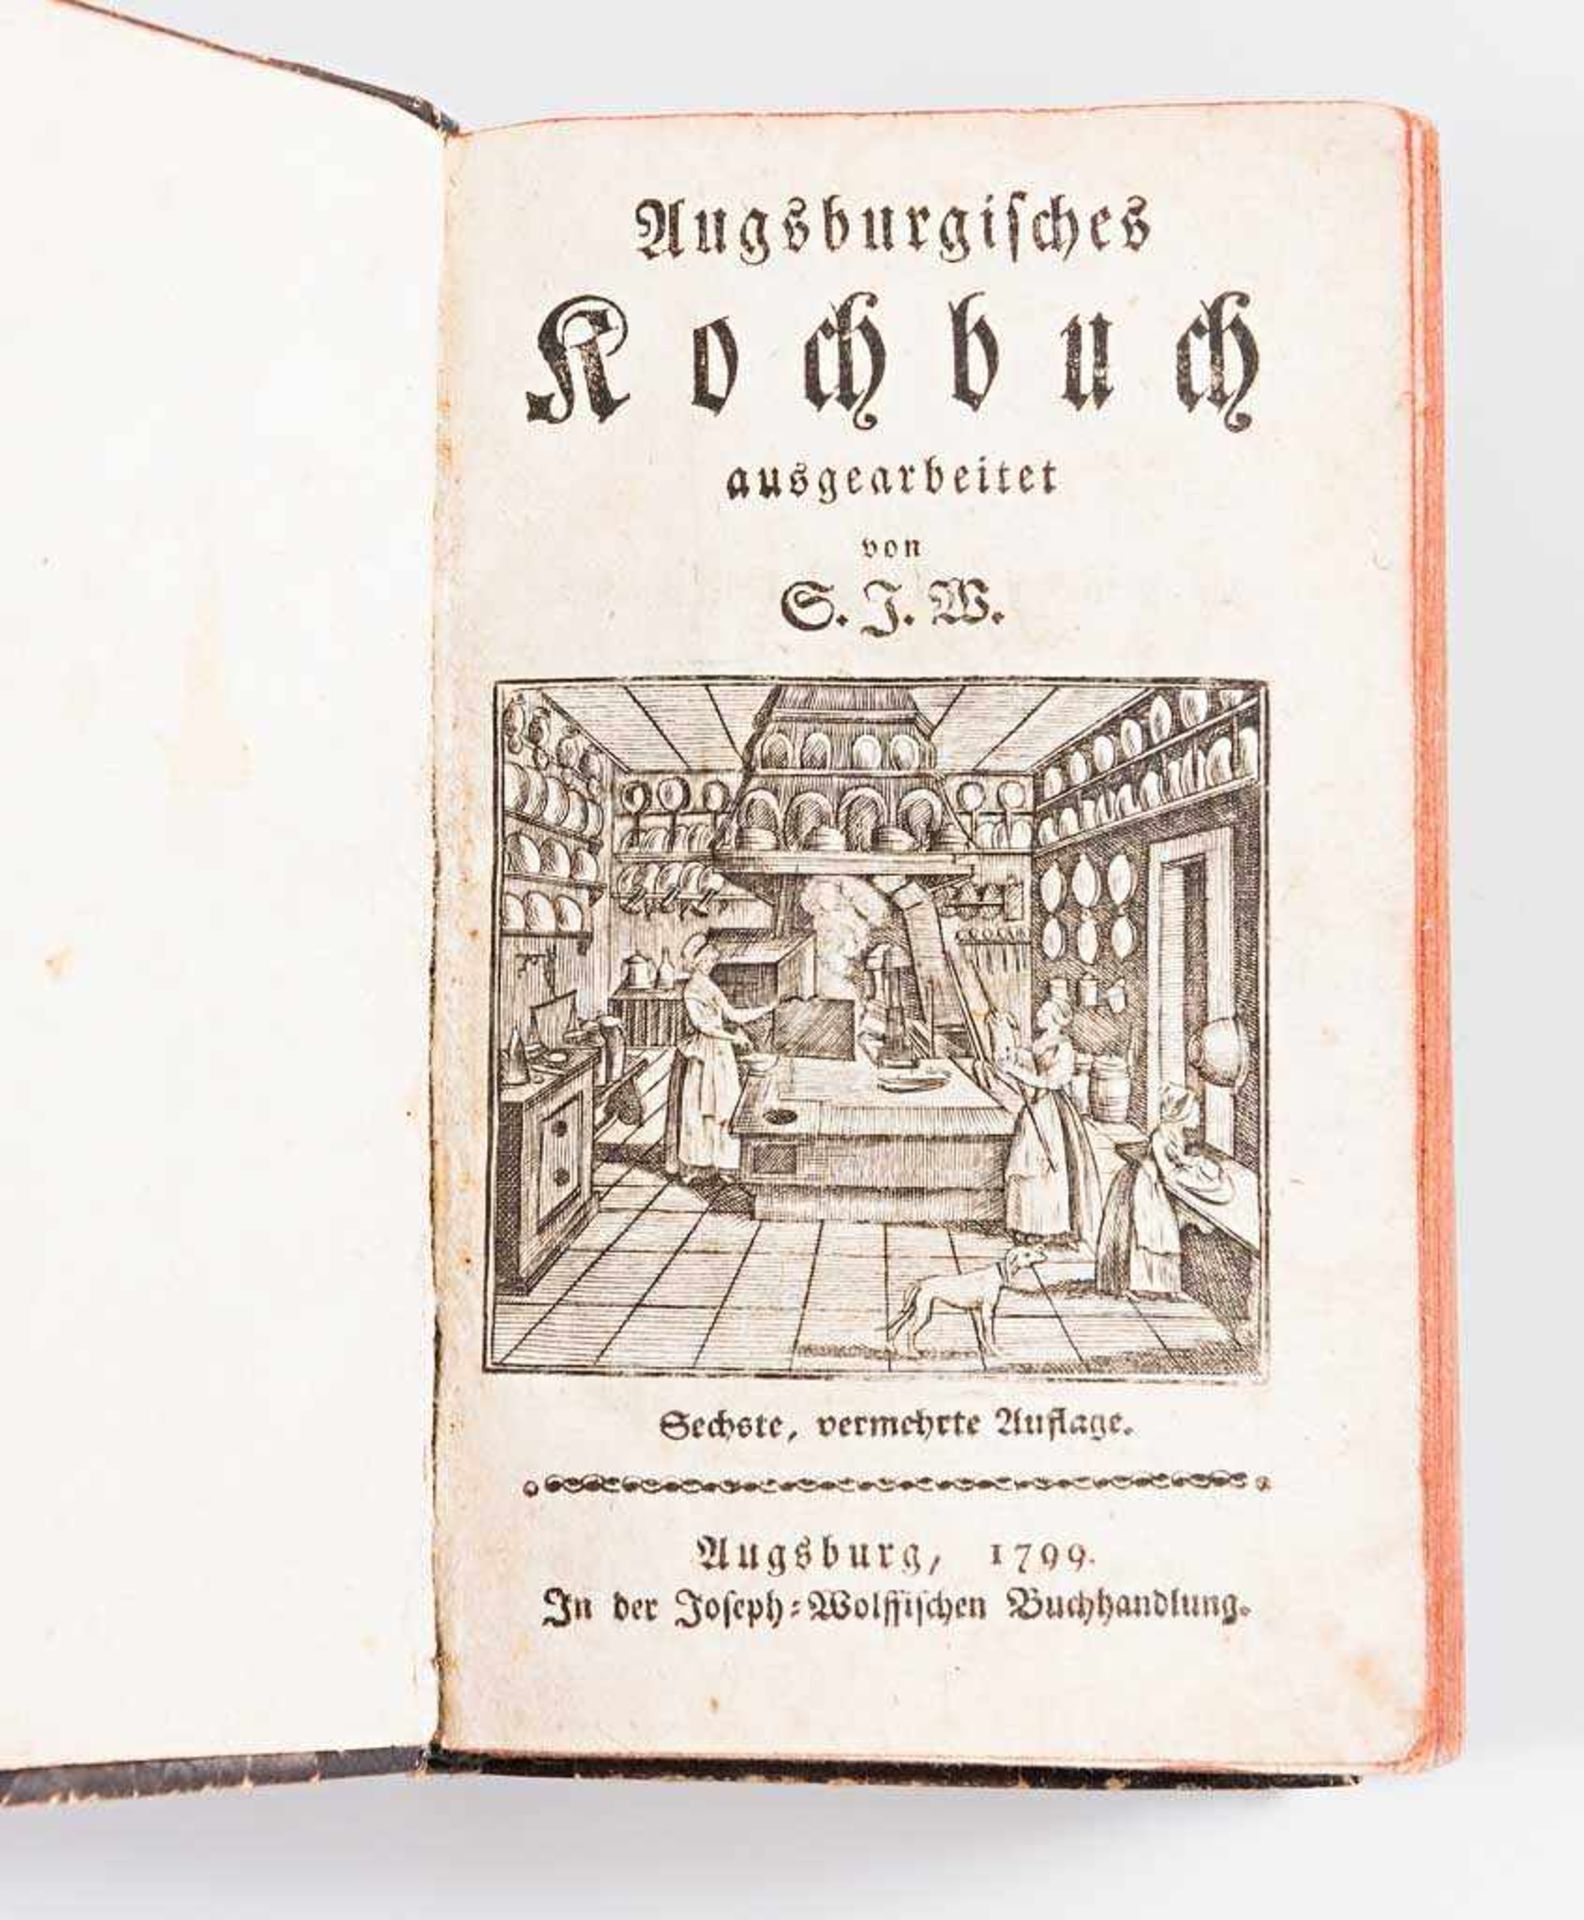 Kochbuch: Weiler, Sophie Juliane. Augsburgisches Kochbuch. Sechste, vermehrte Auflage. Augsburg